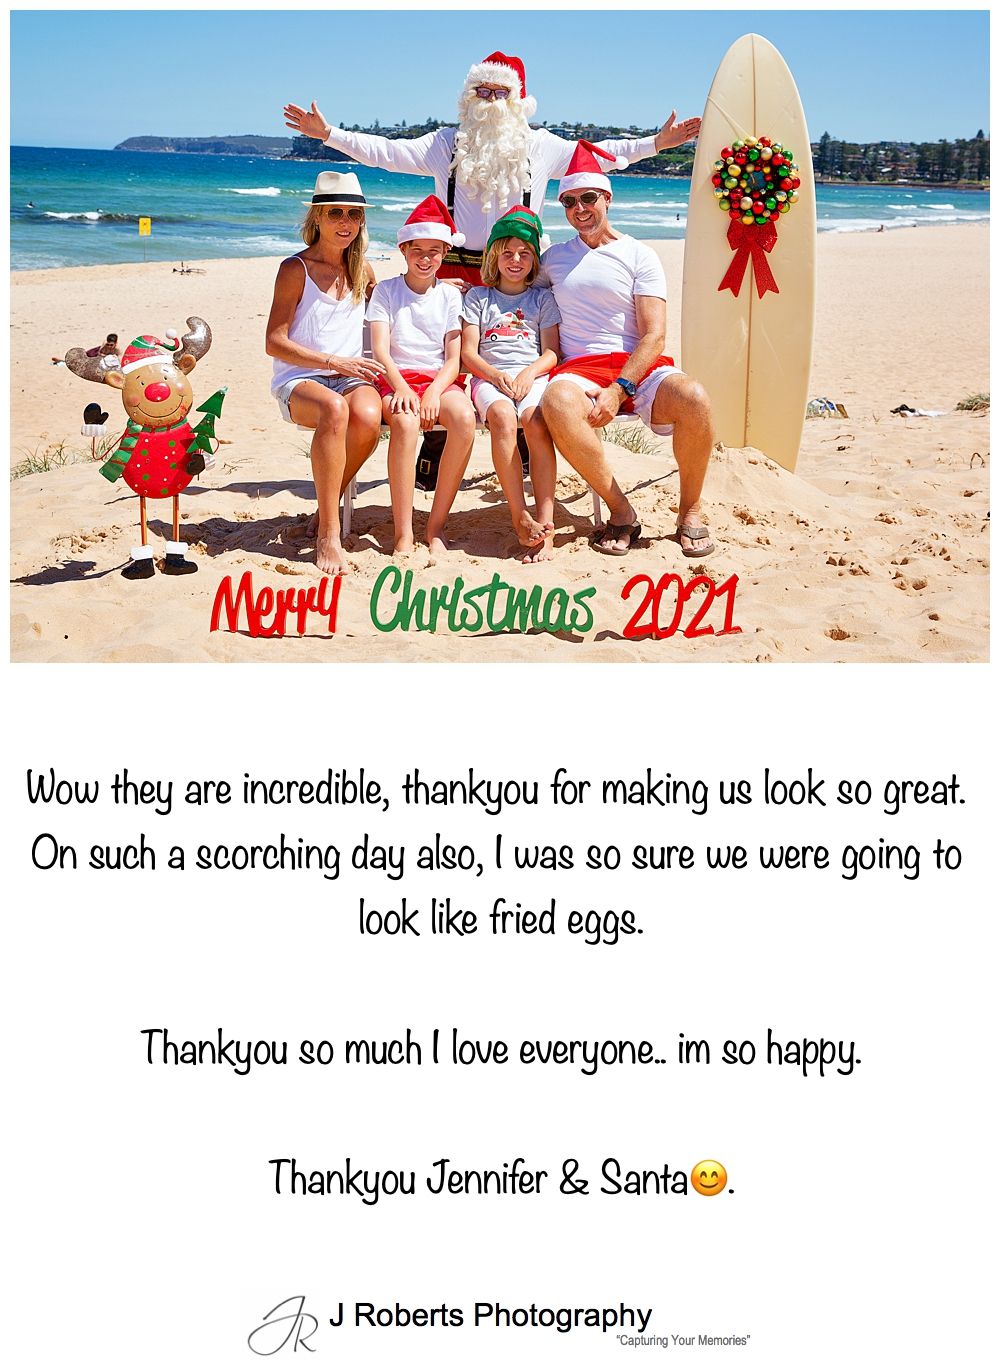 Aussie Santa Photos at Long Reef Beach Customer Feedback 2021